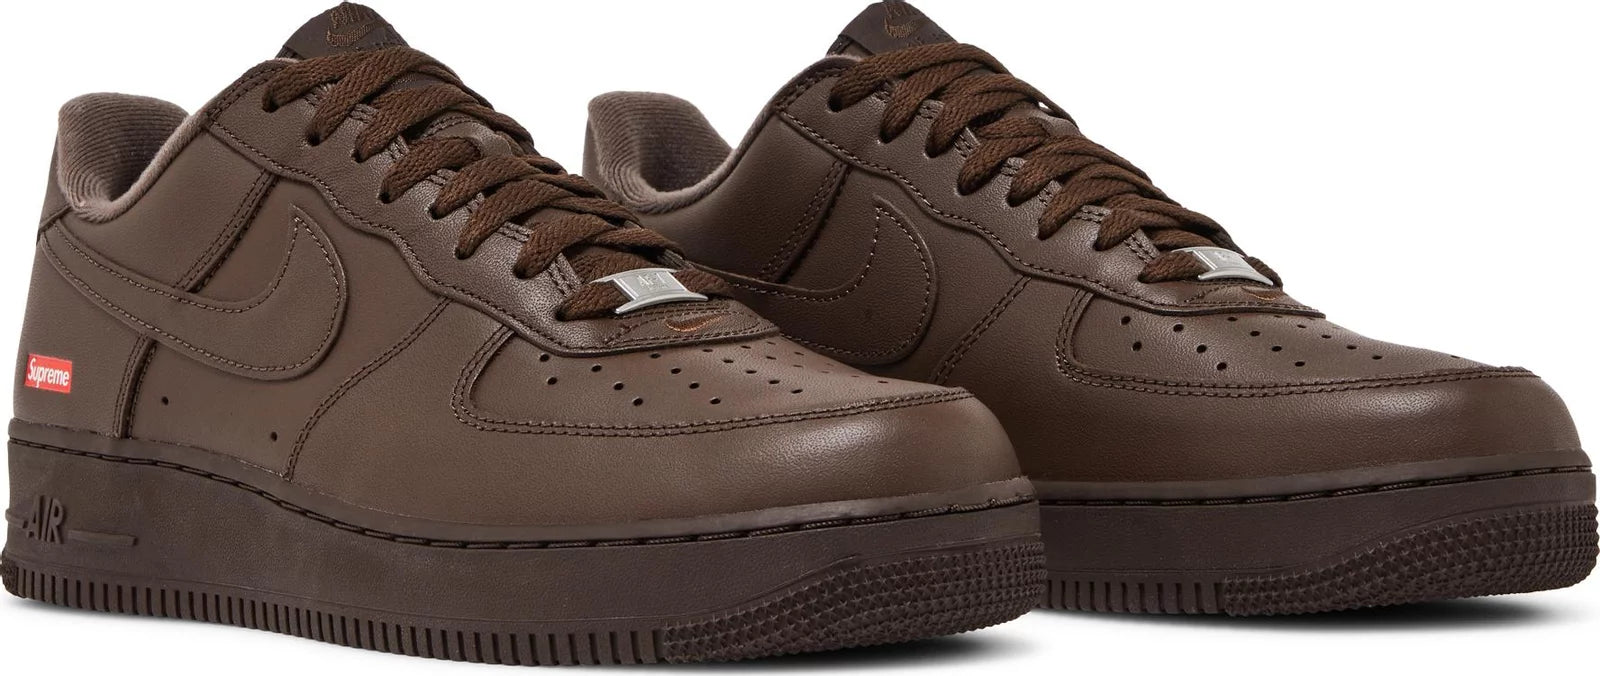 Nike Air Force 1 Low Supreme Baroque Brown - Paroissesaintefoy Sneakers Sale Online